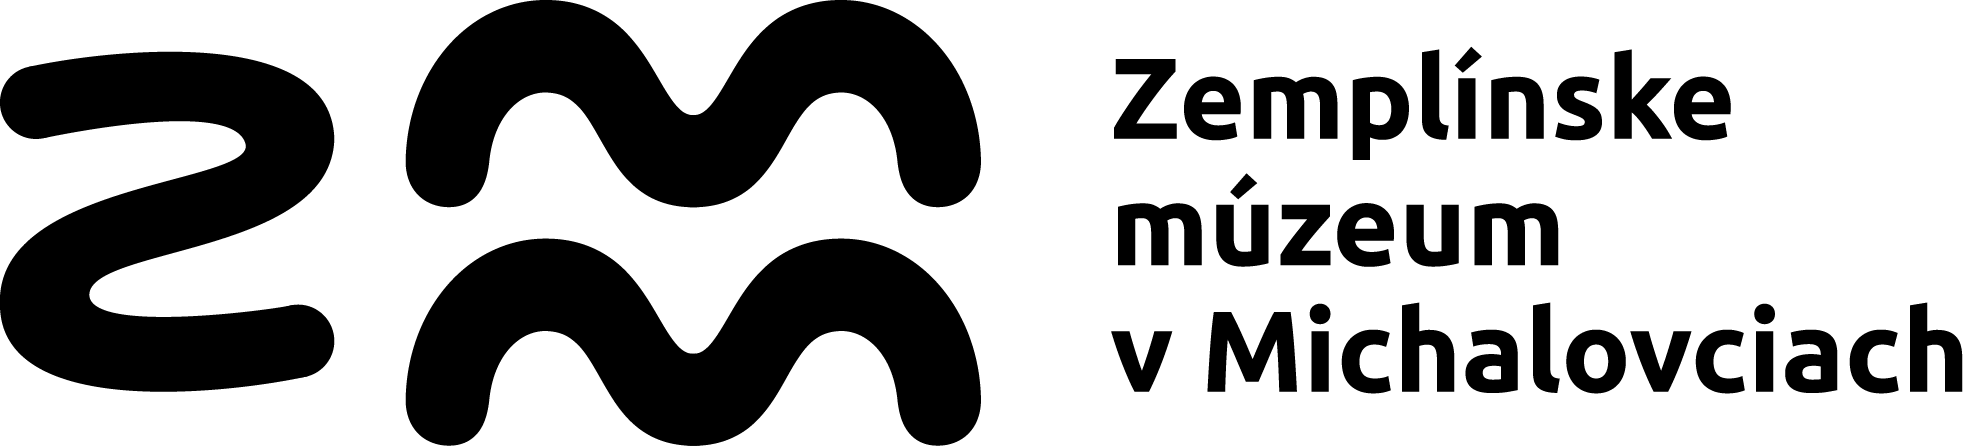 ZMM logo s textom pozitiv. ČB 300 dpi RGB